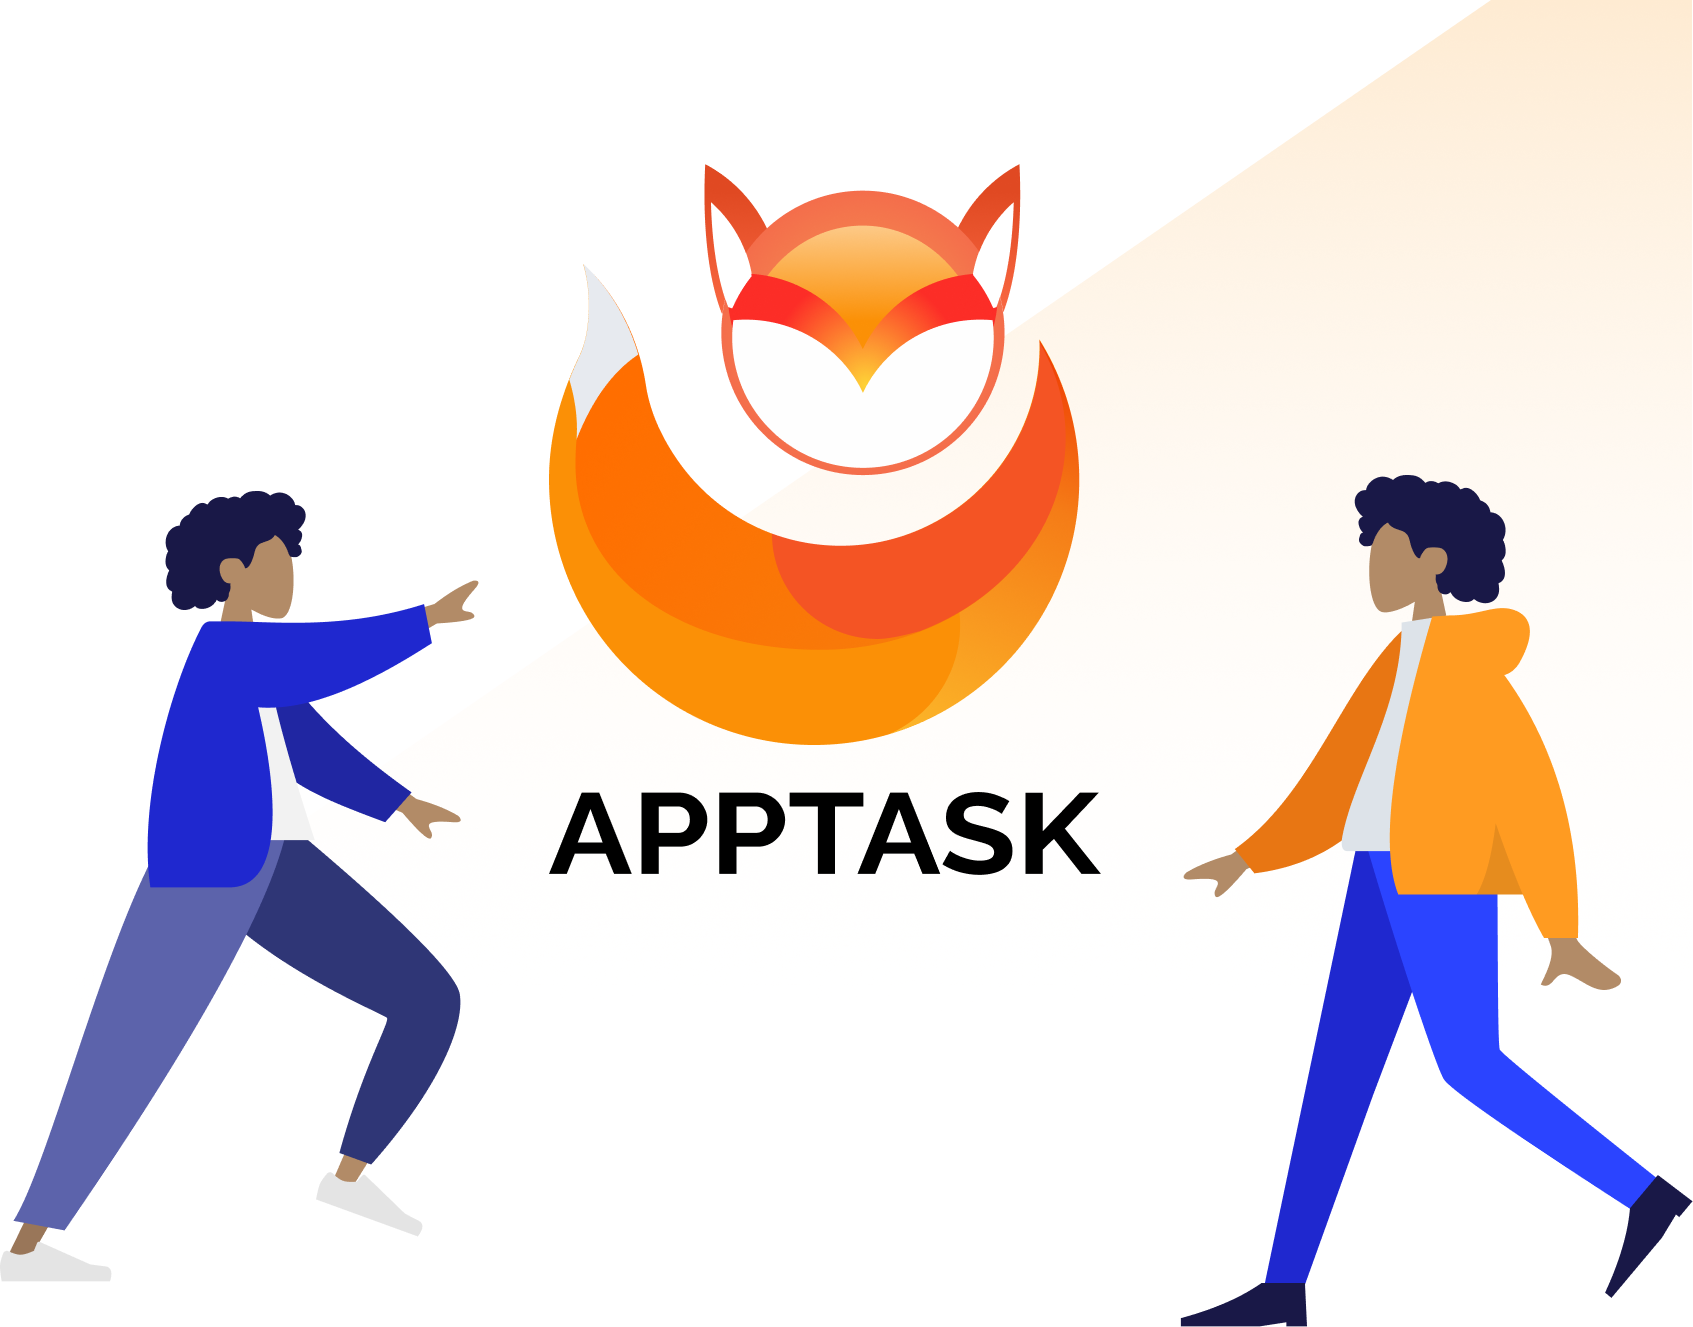 AppTask - программа для слежения за компьютером сотрудника